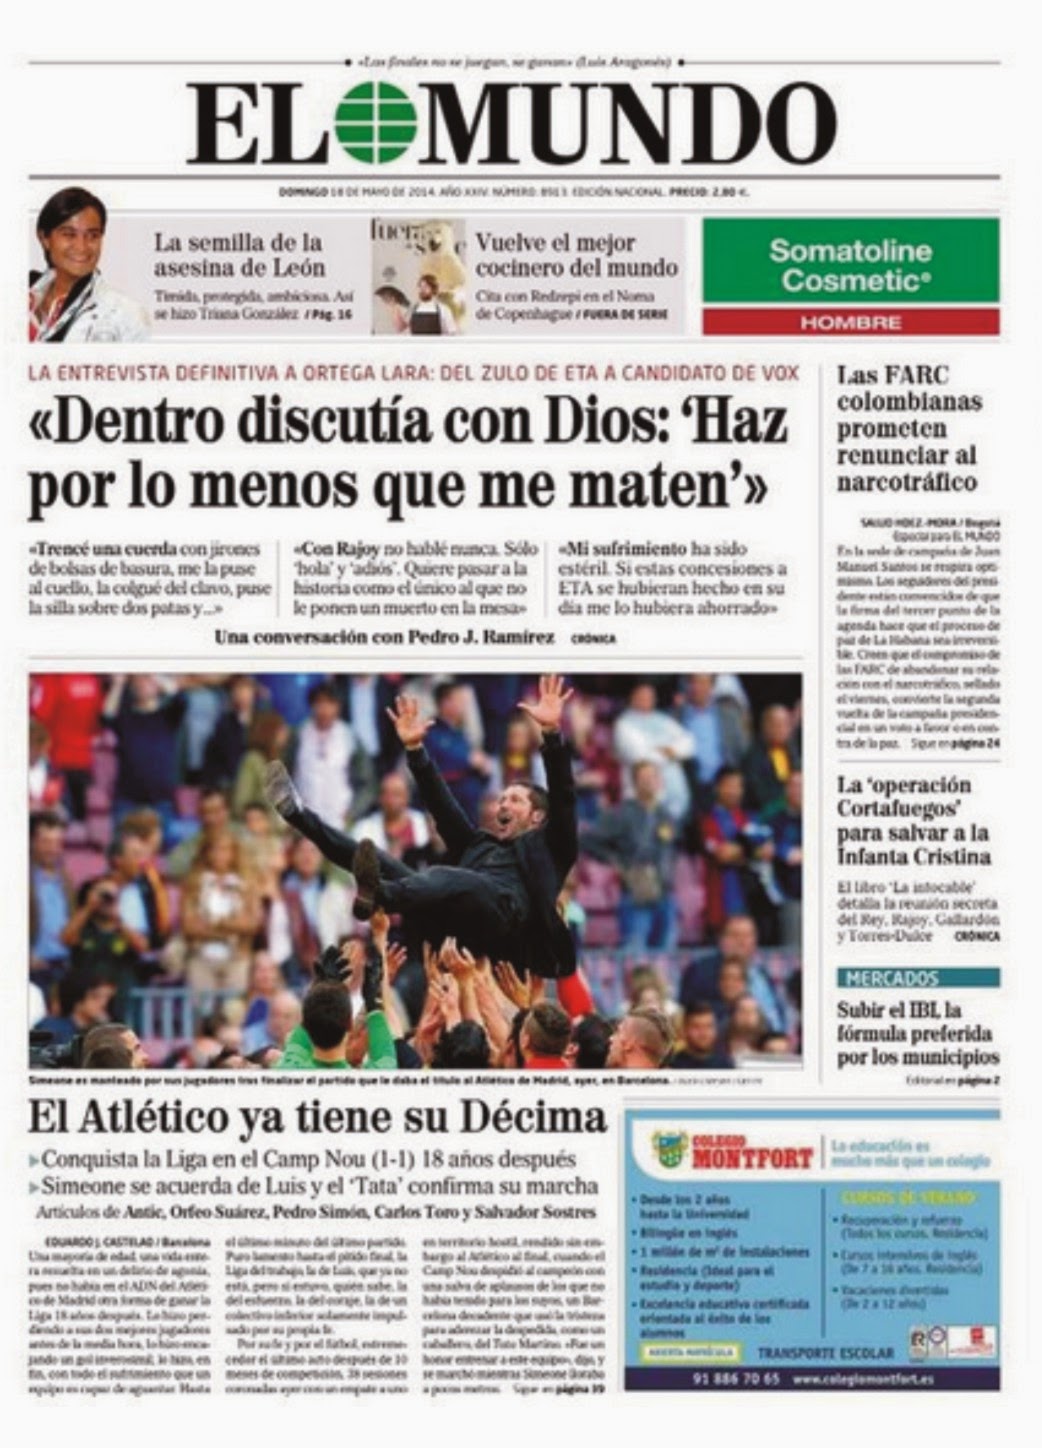 LA PELOTA NO DOBLA: Atlético de Madrid campeón de Liga en la tapa de los diarios.